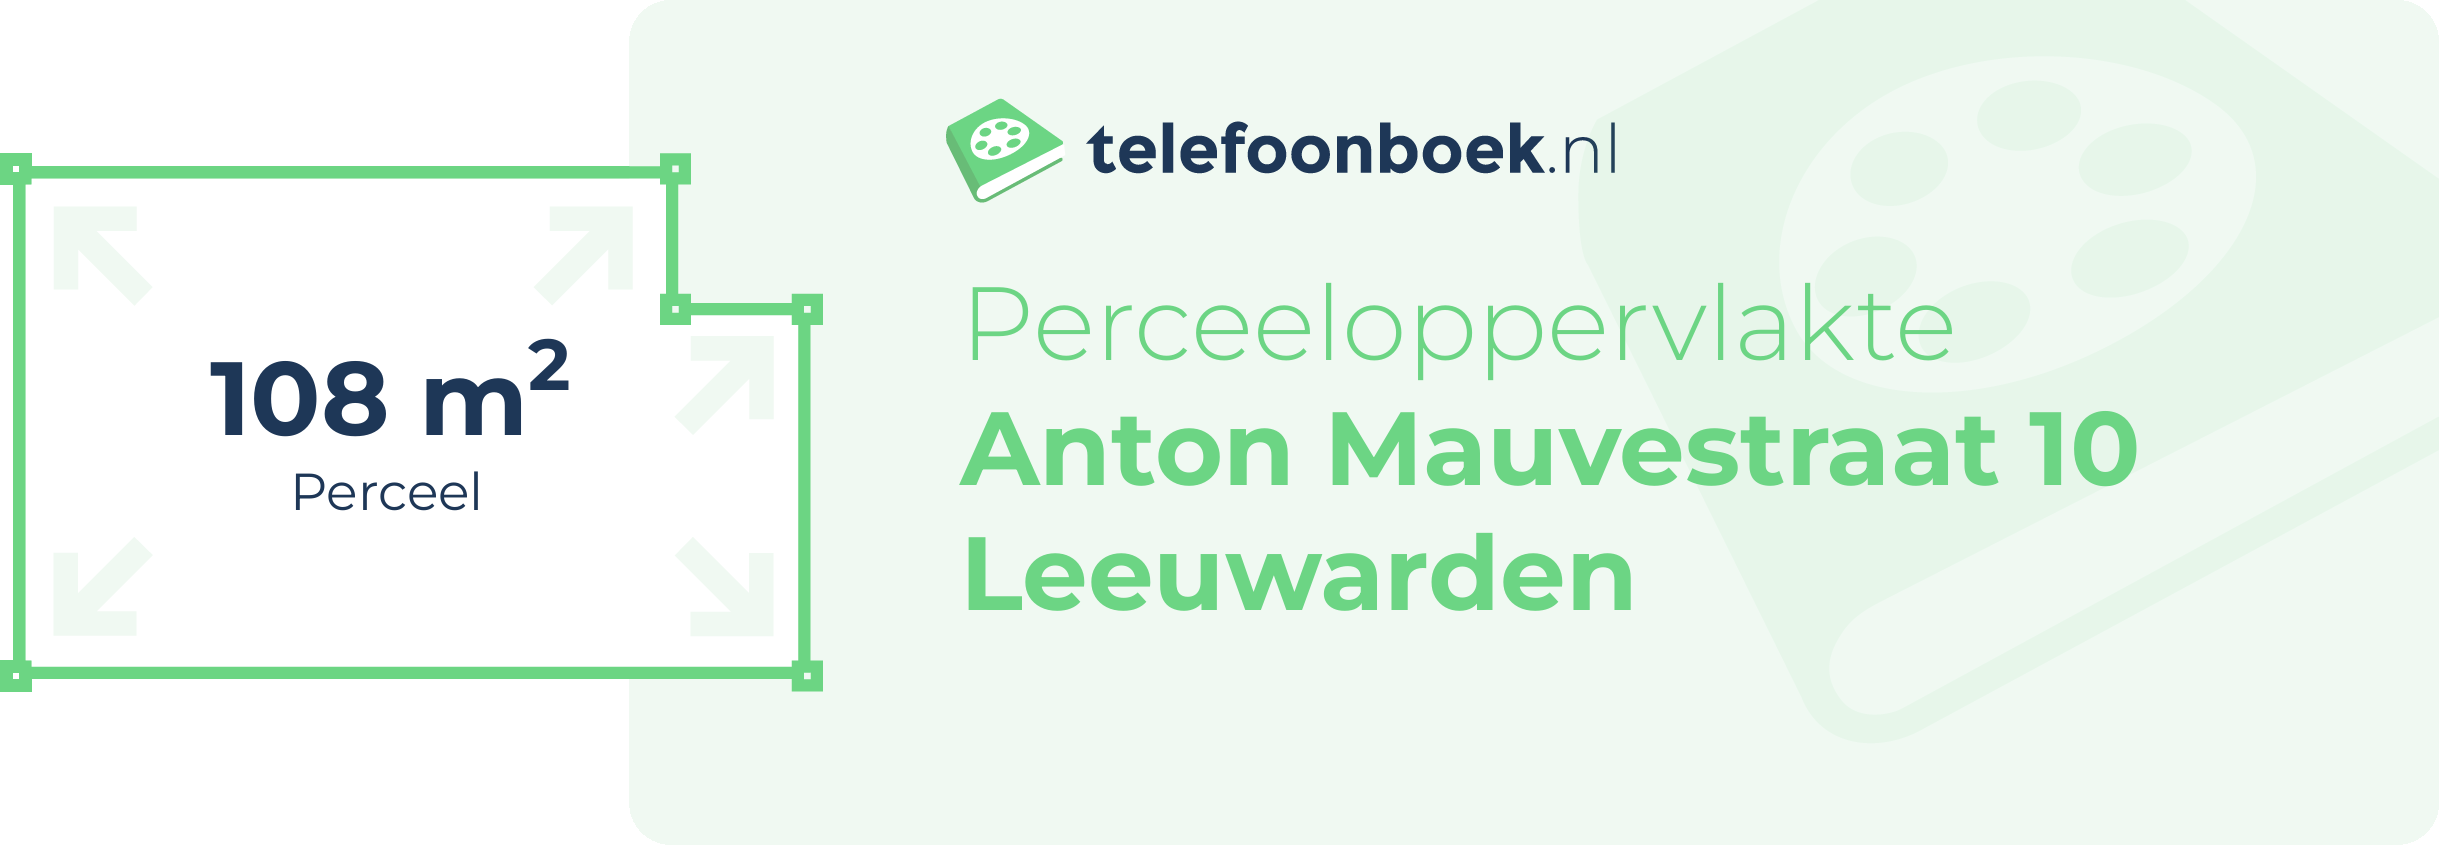 Perceeloppervlakte Anton Mauvestraat 10 Leeuwarden